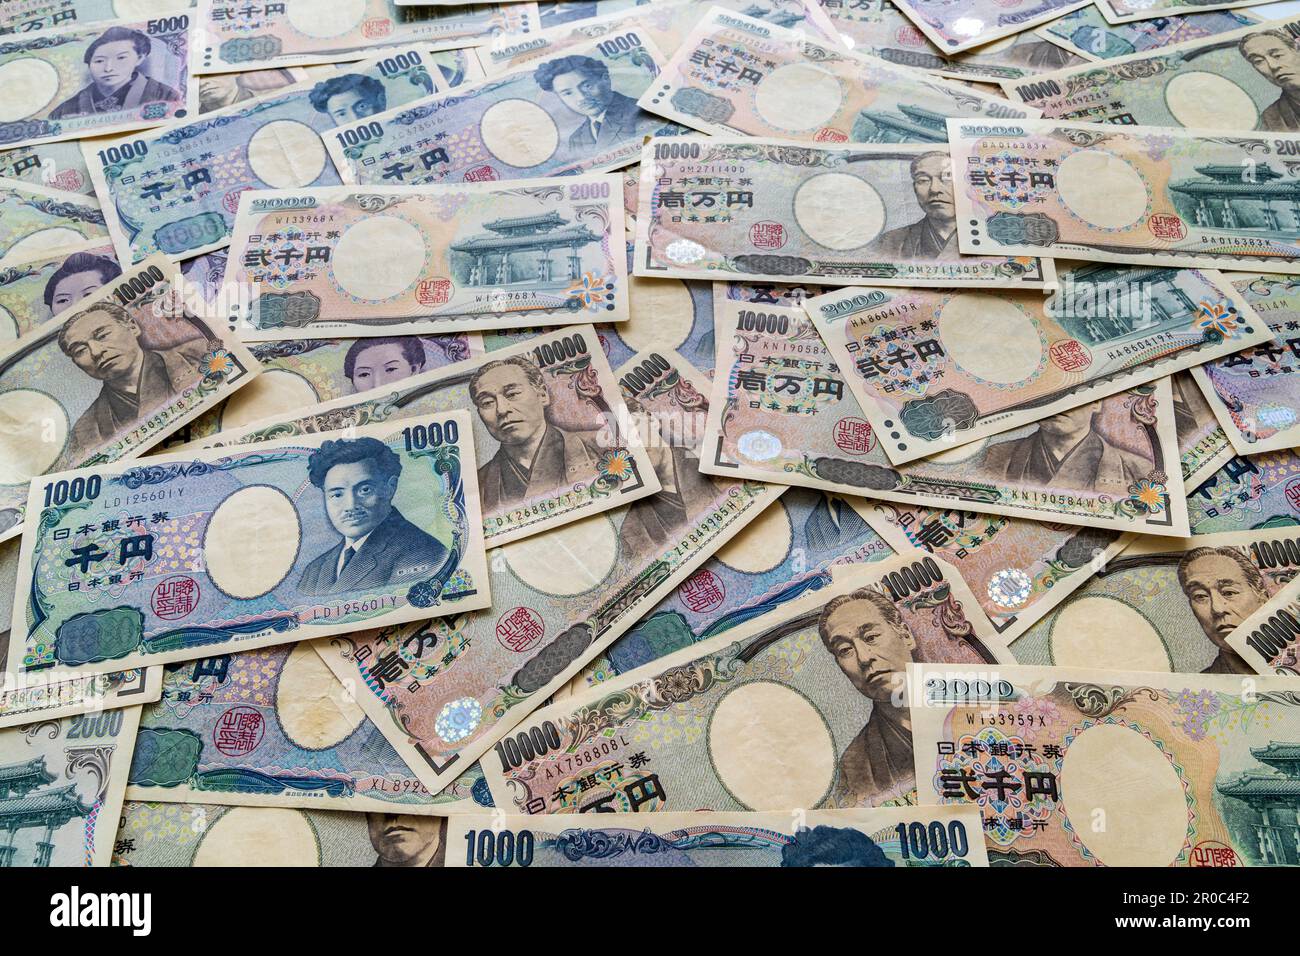 Devise japonaise. Voir regarder vers le bas un tas de billets japonais en différentes valeurs, 1000, 2000, 5000 et 10 000 yens Banque D'Images